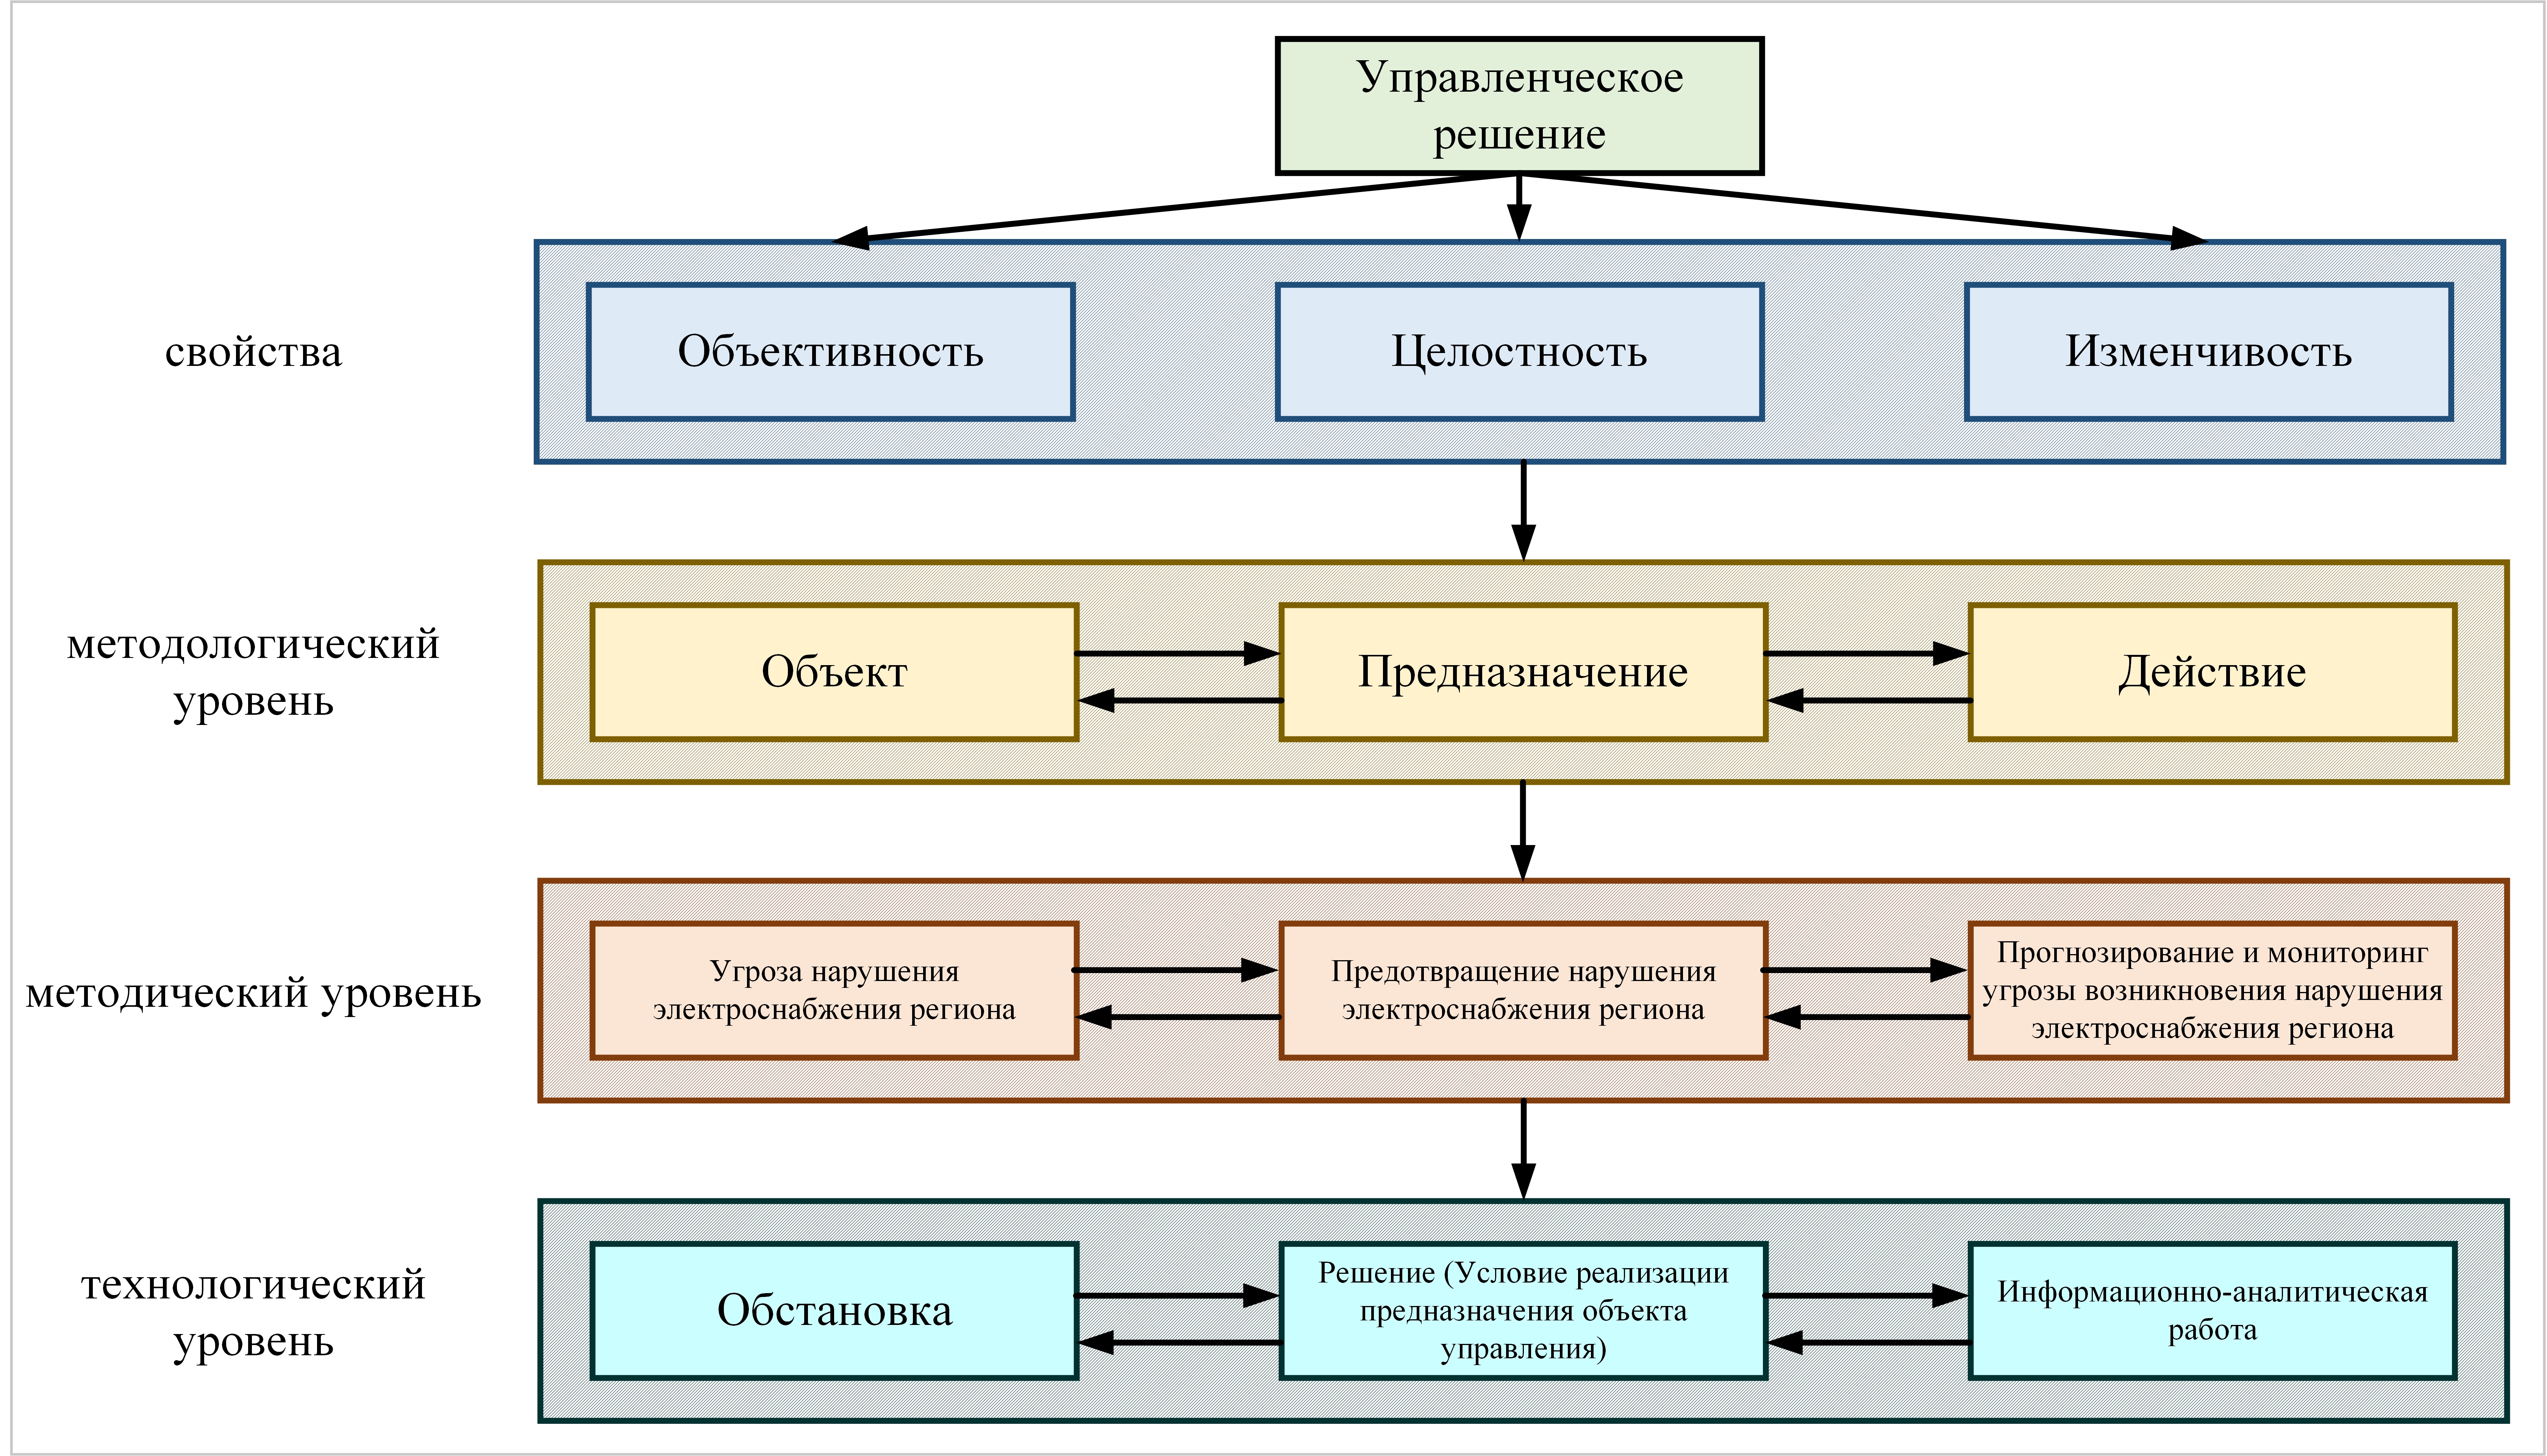 Структурная схема развертывания содержания категории «Управленческое решение» как процесса